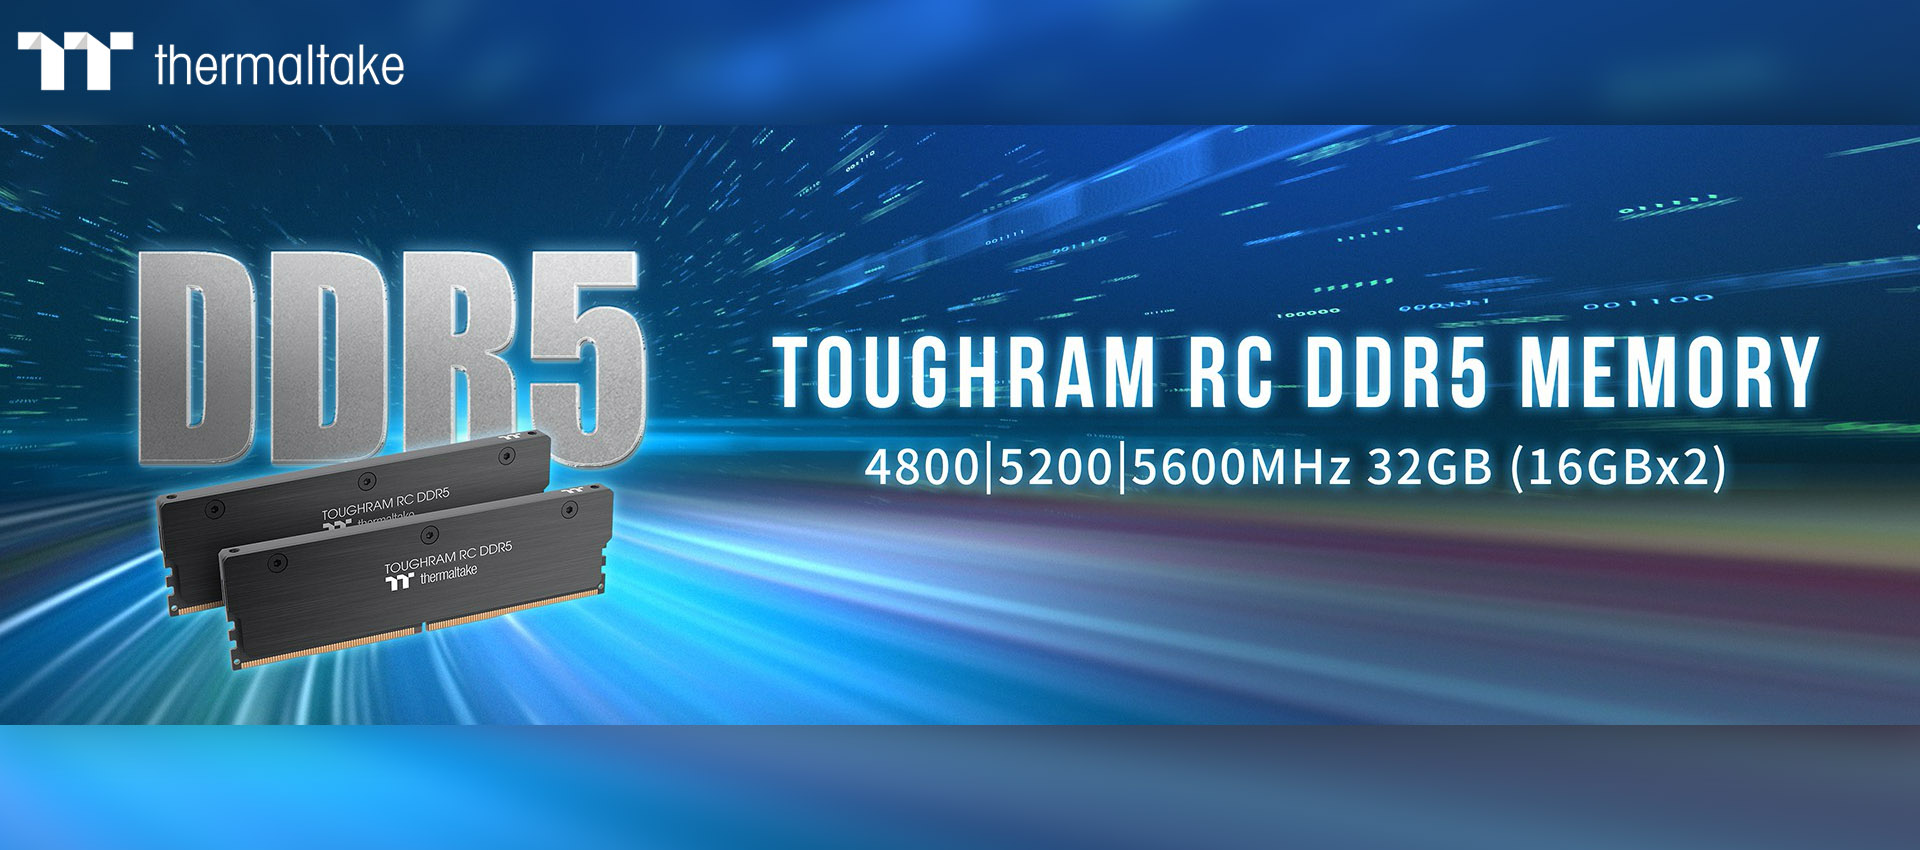 TOUGHRAM RC DDR5